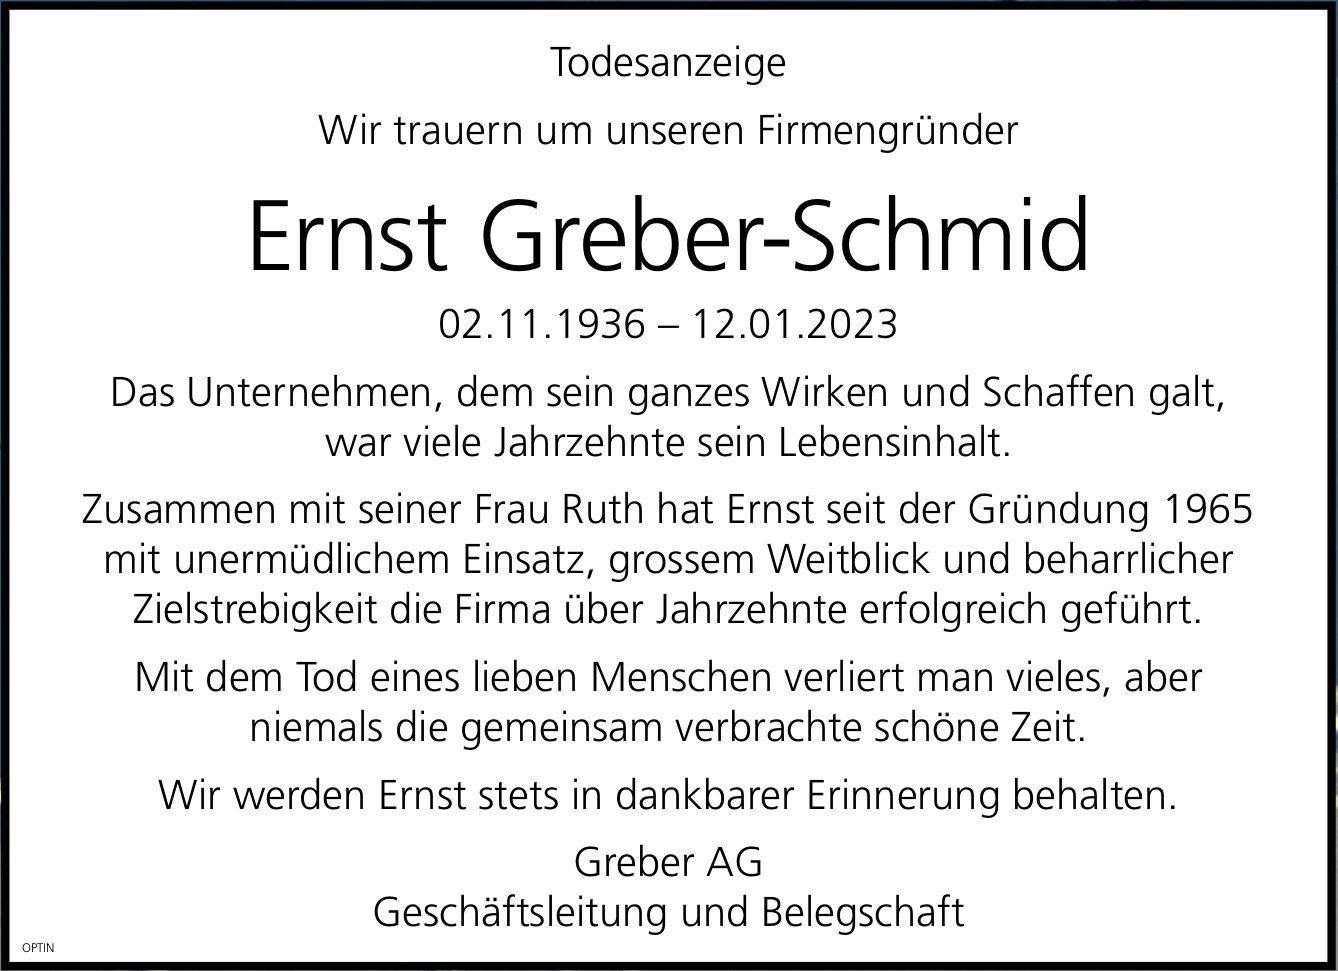 Ernst Greber-Schmid, Januar 2023 / TA